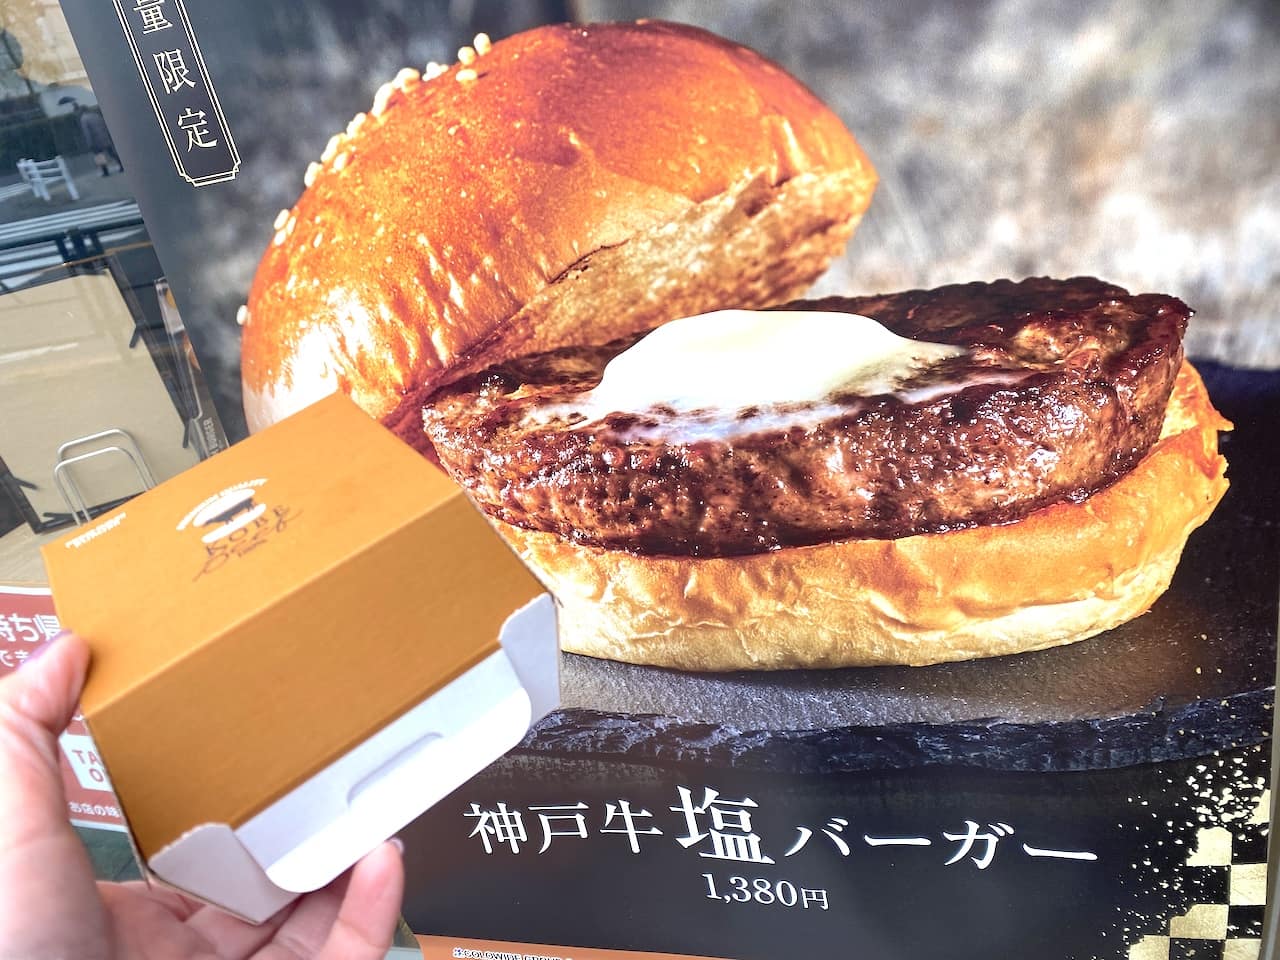 1380円だけど絶対また買う カルピスバターのっけの神戸牛塩バーガー フレッシュネス イエモネ